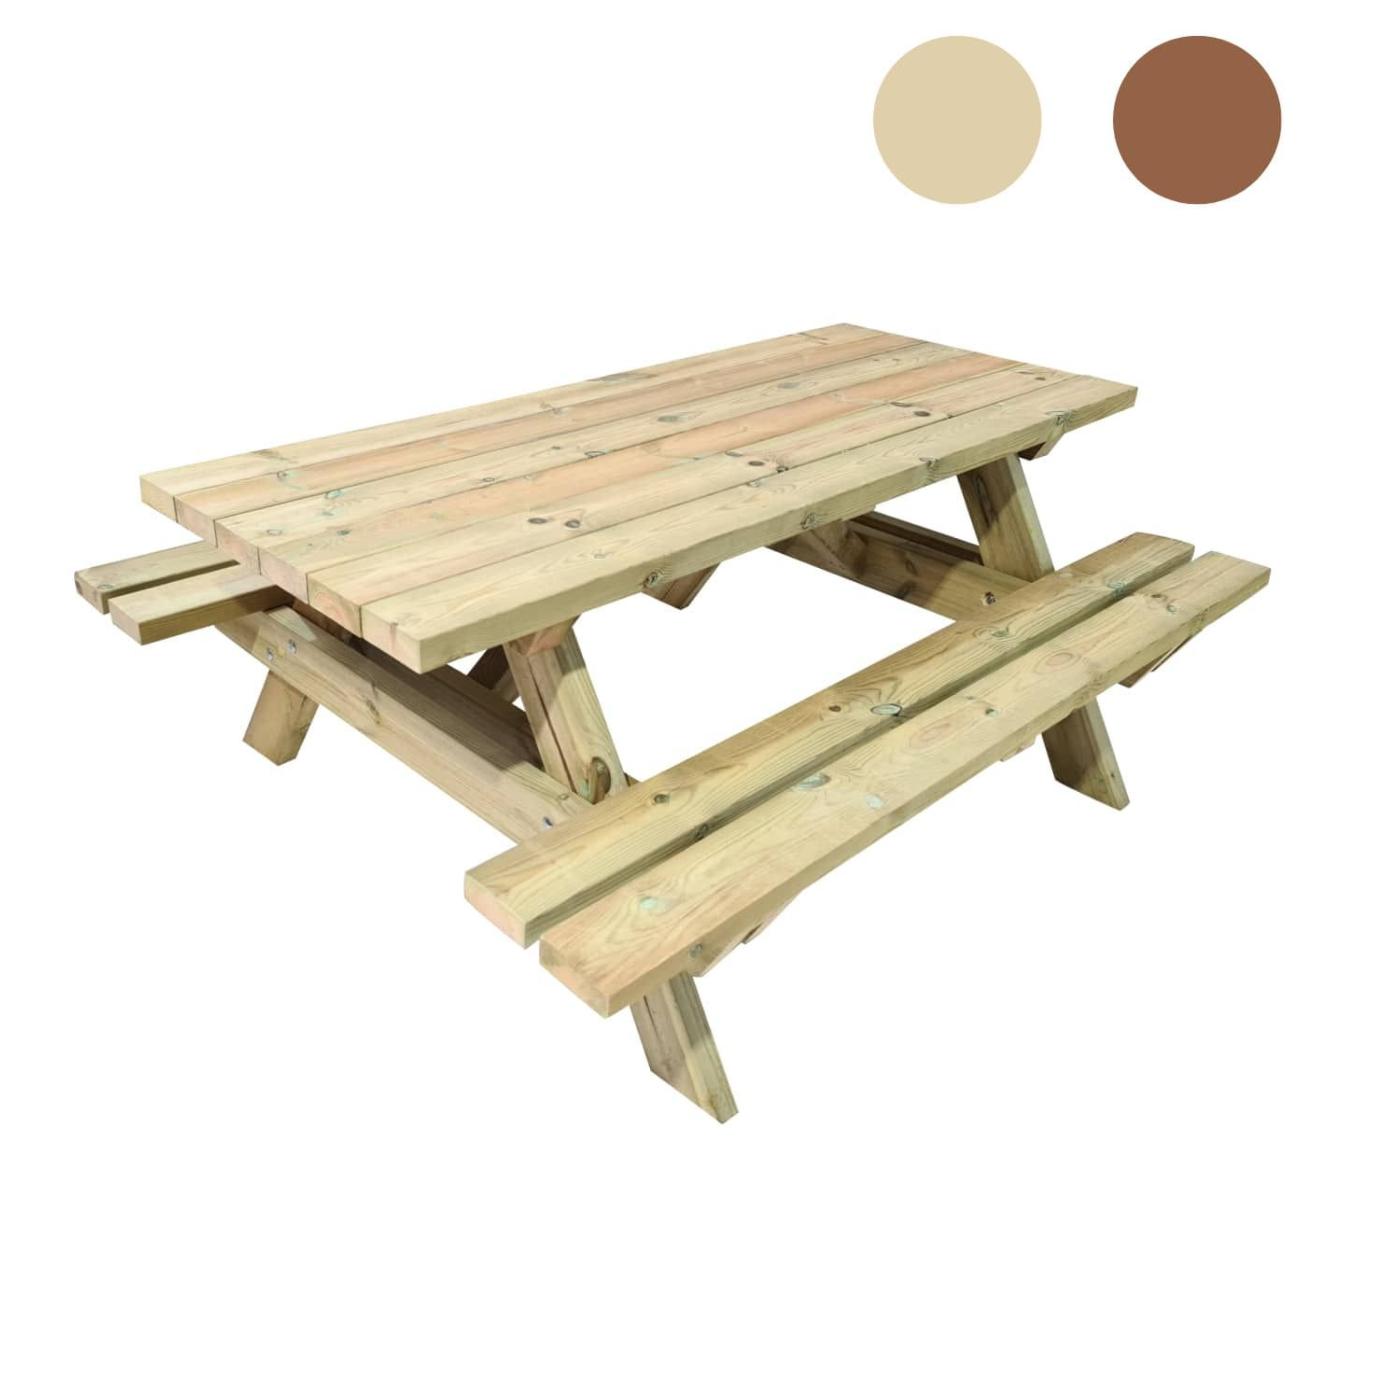 Mesa de picnic MUNICH de madera tratada para el exterior